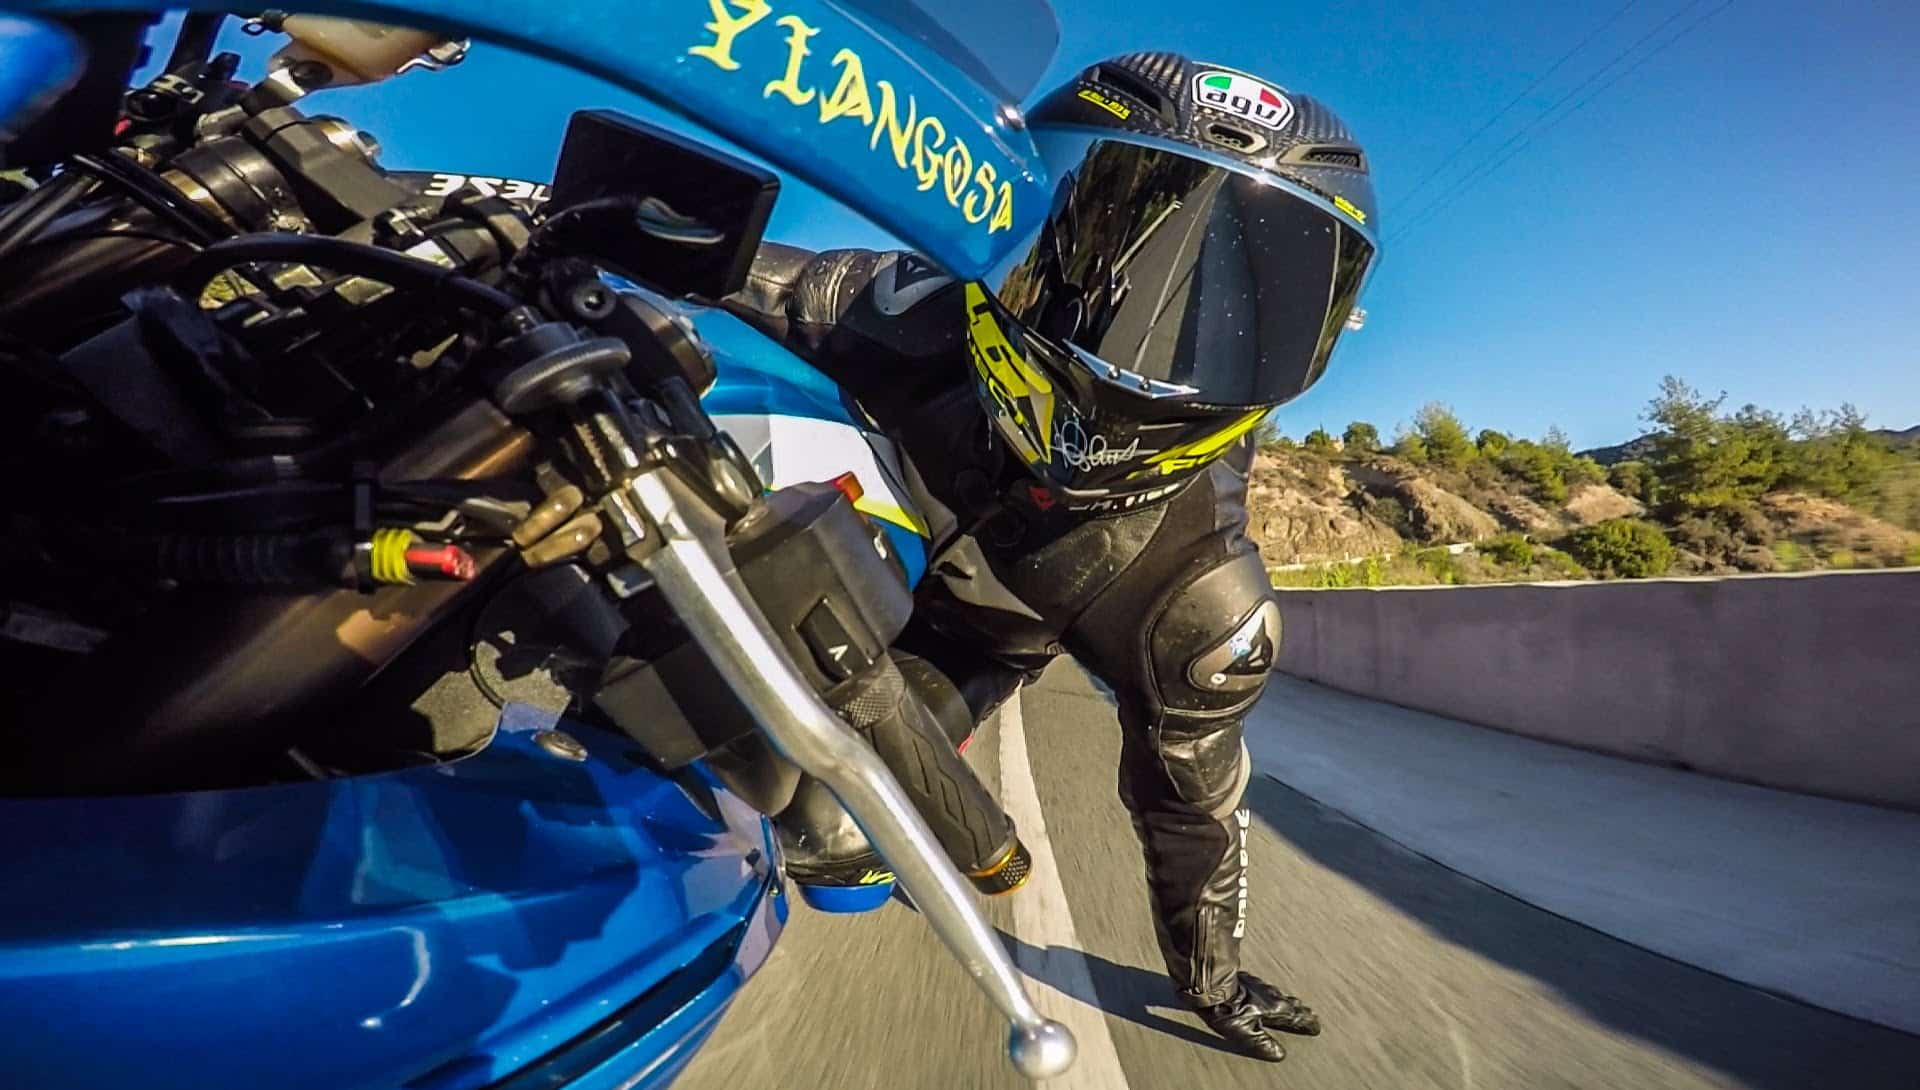 Fixer une GoPro sur son casque moto, le B A BA